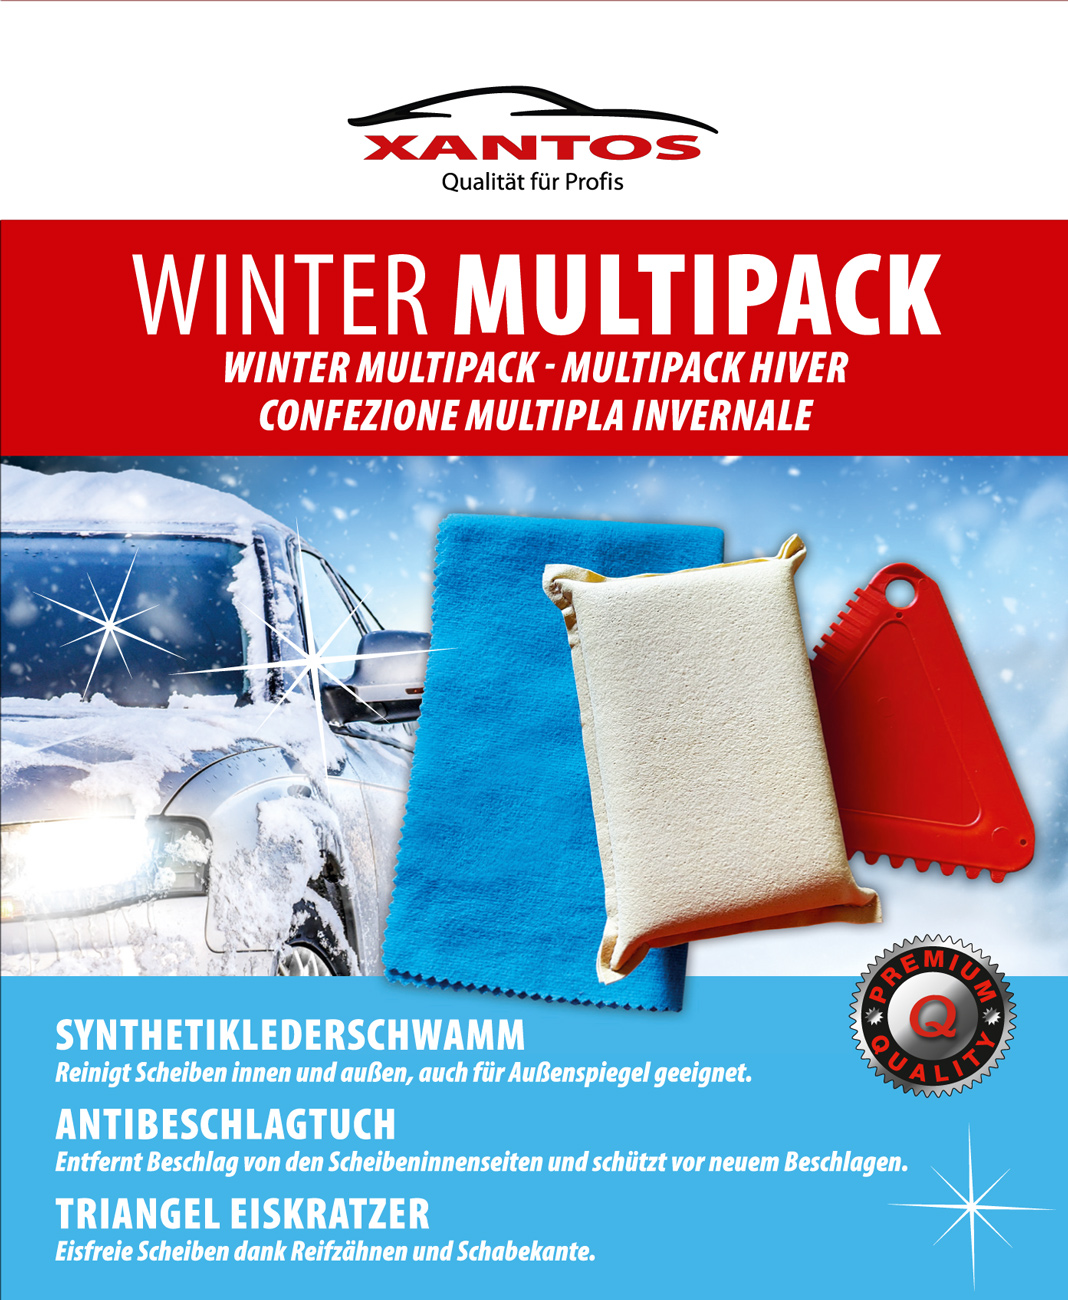 XANTOS Winter Multipack Schwamm,Antibeschlagtuch,Eiskratzer - 514232